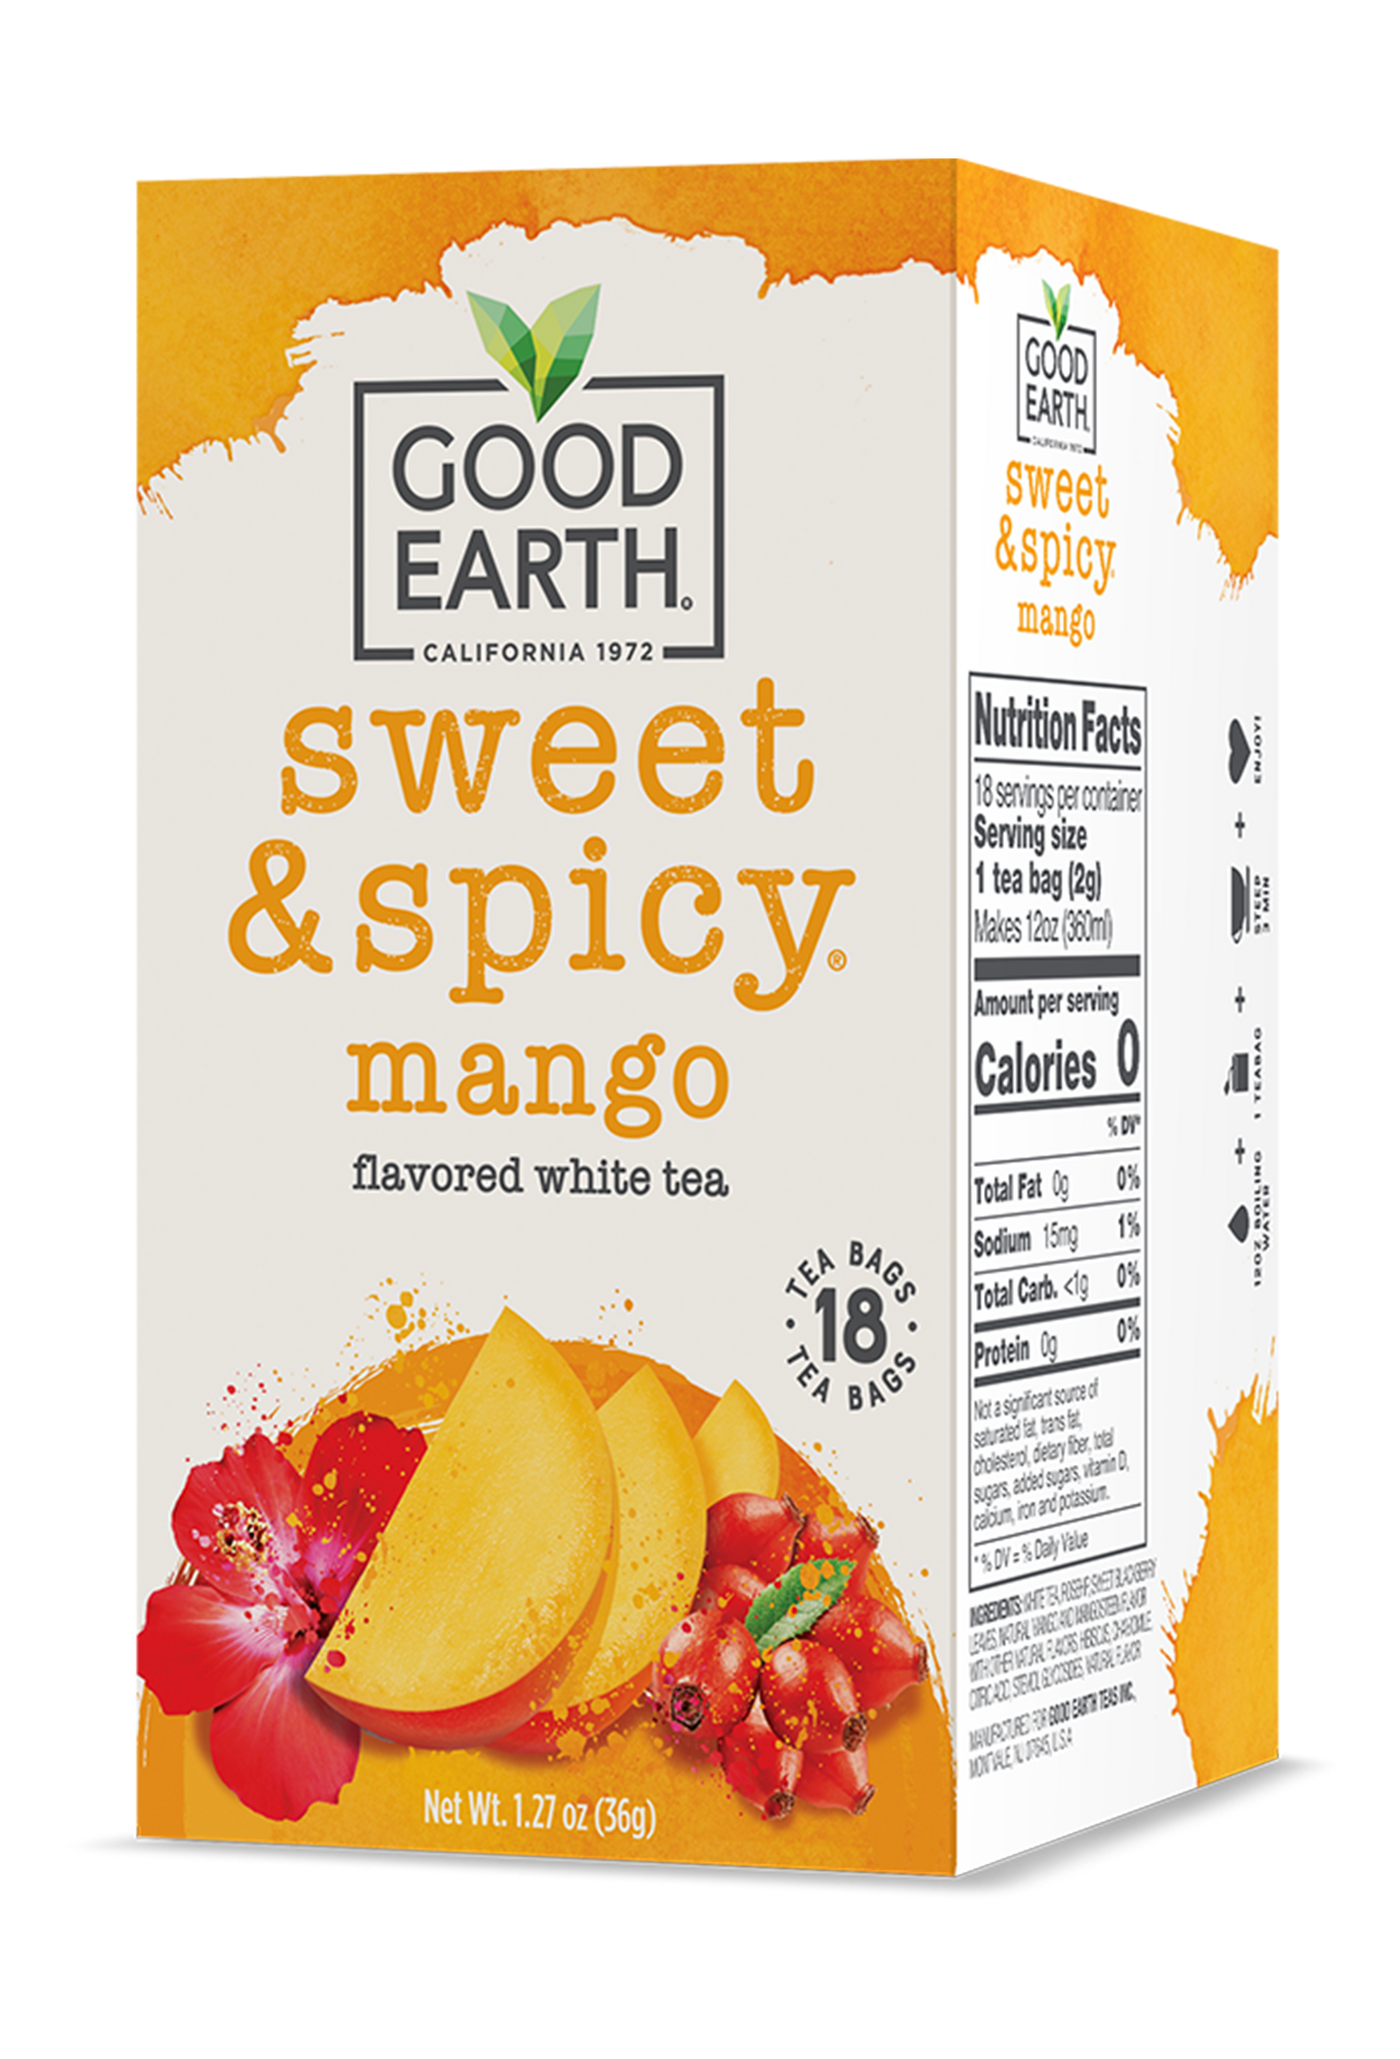 Sweet & Spicy Mango packaging